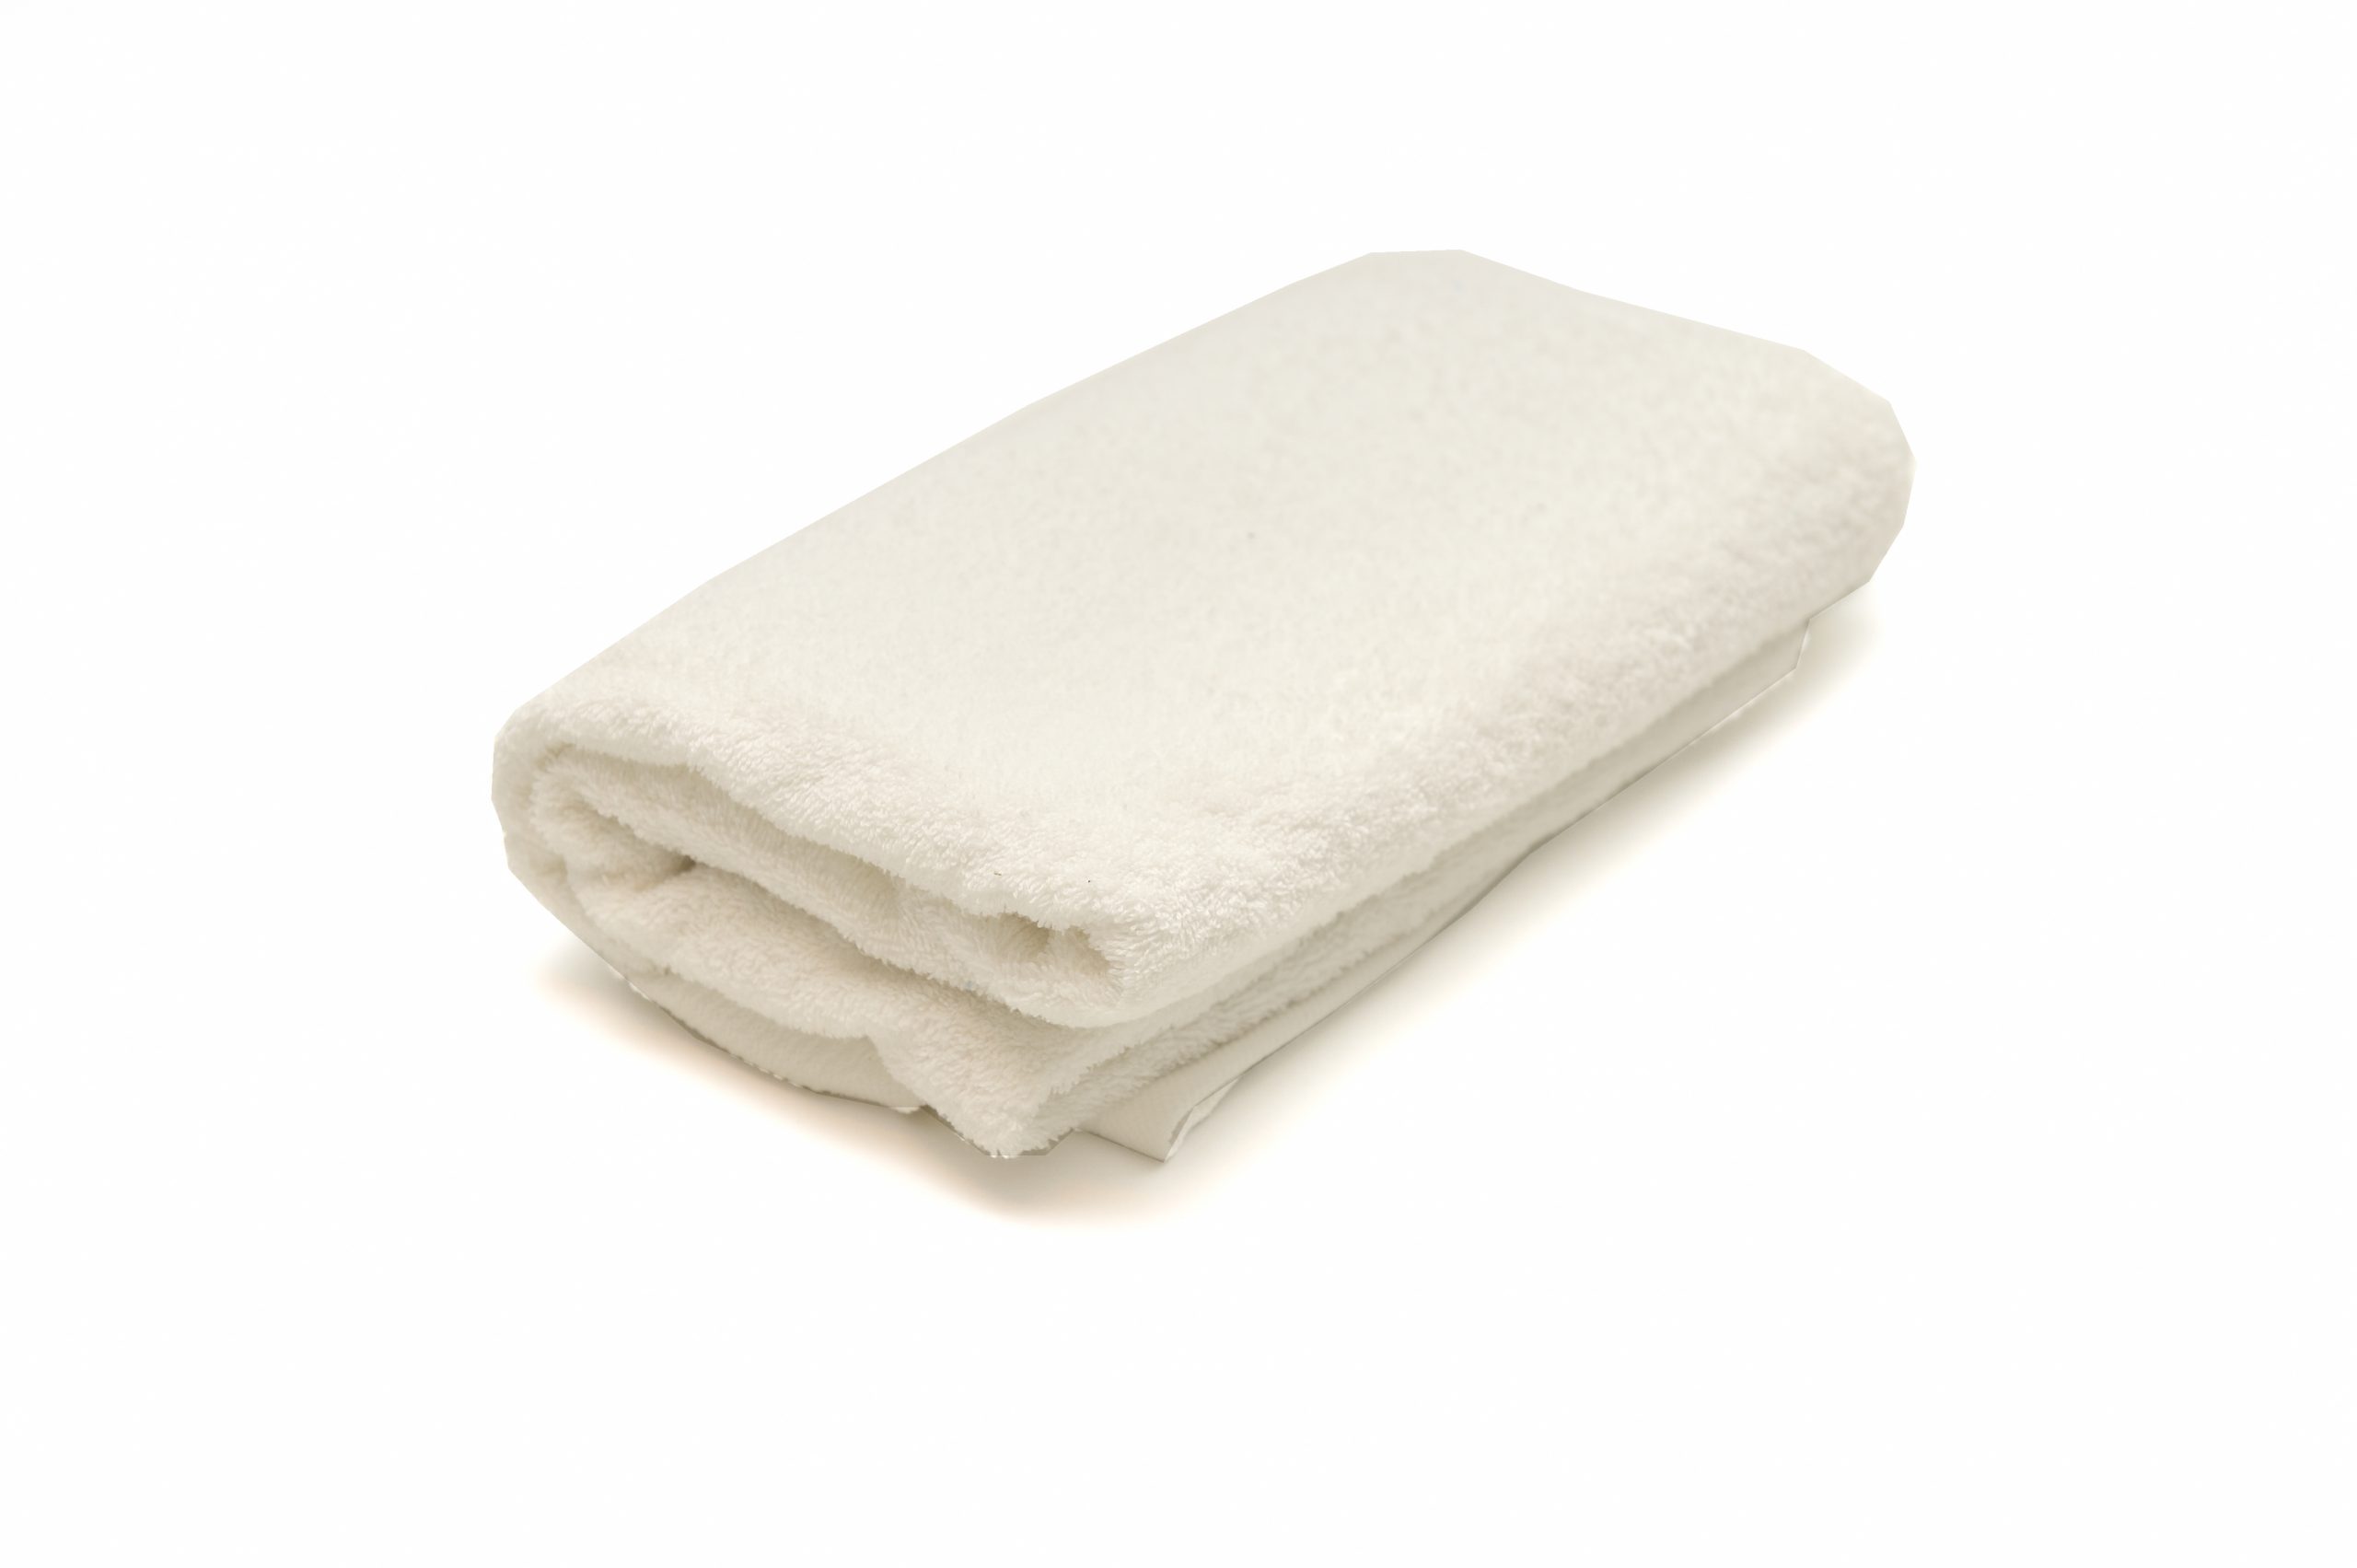 Kwaliteit badstof handdoeken in diverse kleuren en modellen van Westerweel Textiles